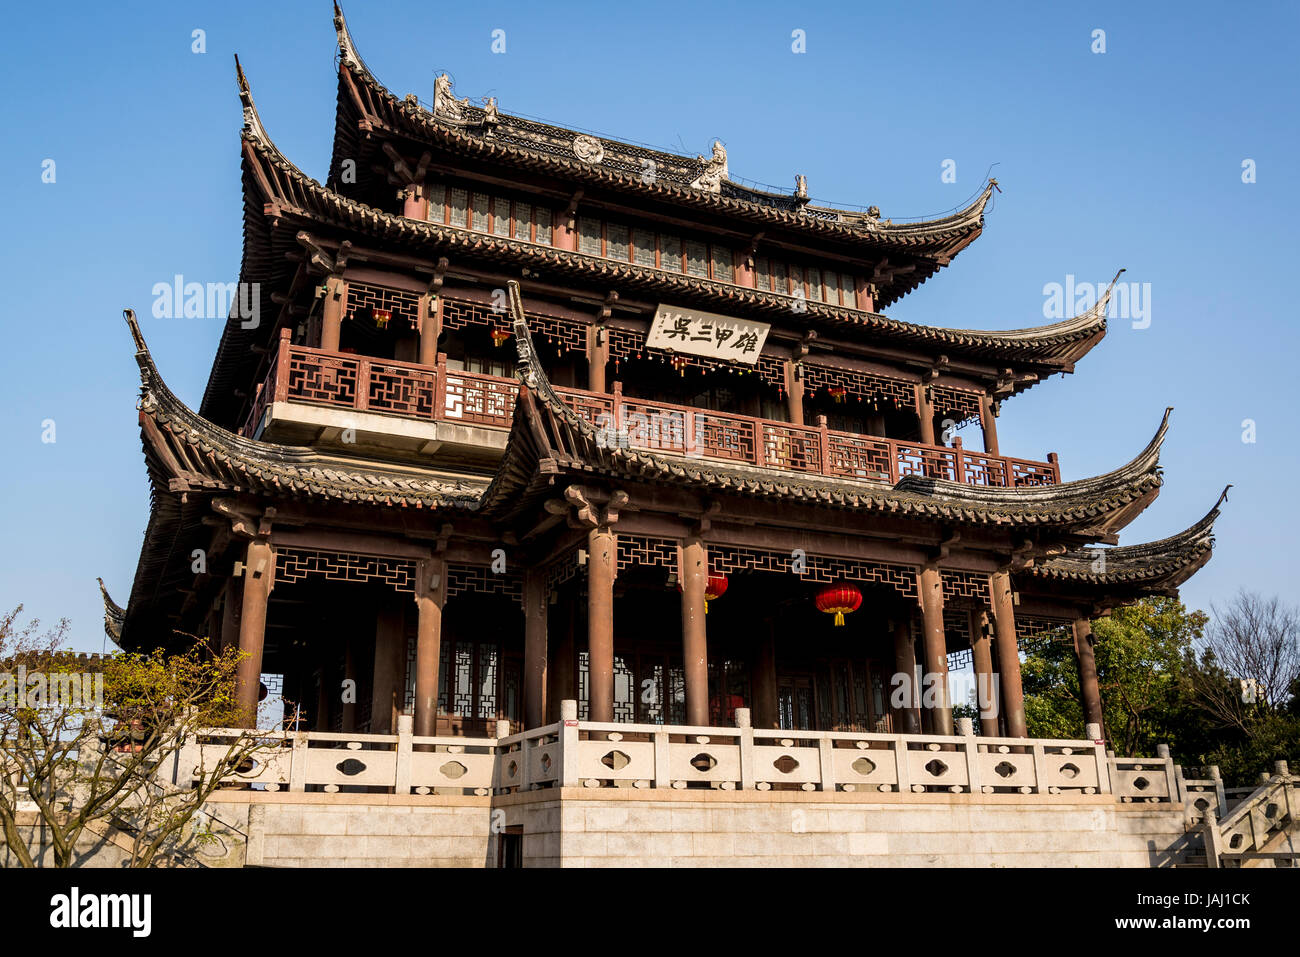 Padiglione del giardino, Pan di gate o di Panmen Scenic Area, Suzhou, provincia dello Jiangsu, Cina Foto Stock